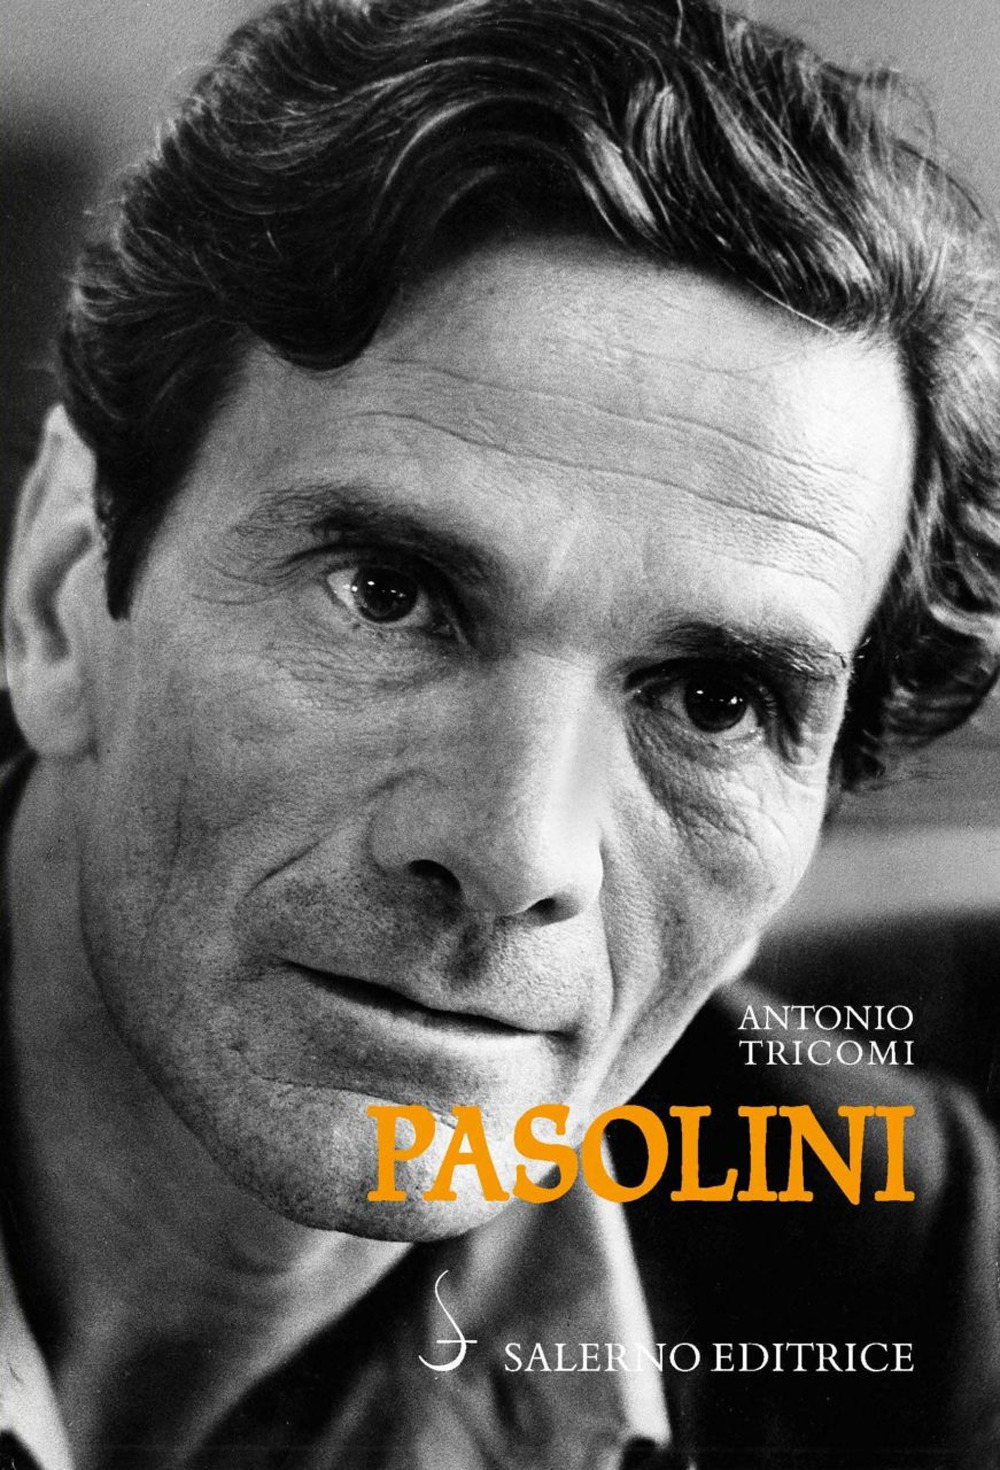 Libri Antonio Tricomi - Pasolini NUOVO SIGILLATO, EDIZIONE DEL 19/03/2020 SUBITO DISPONIBILE